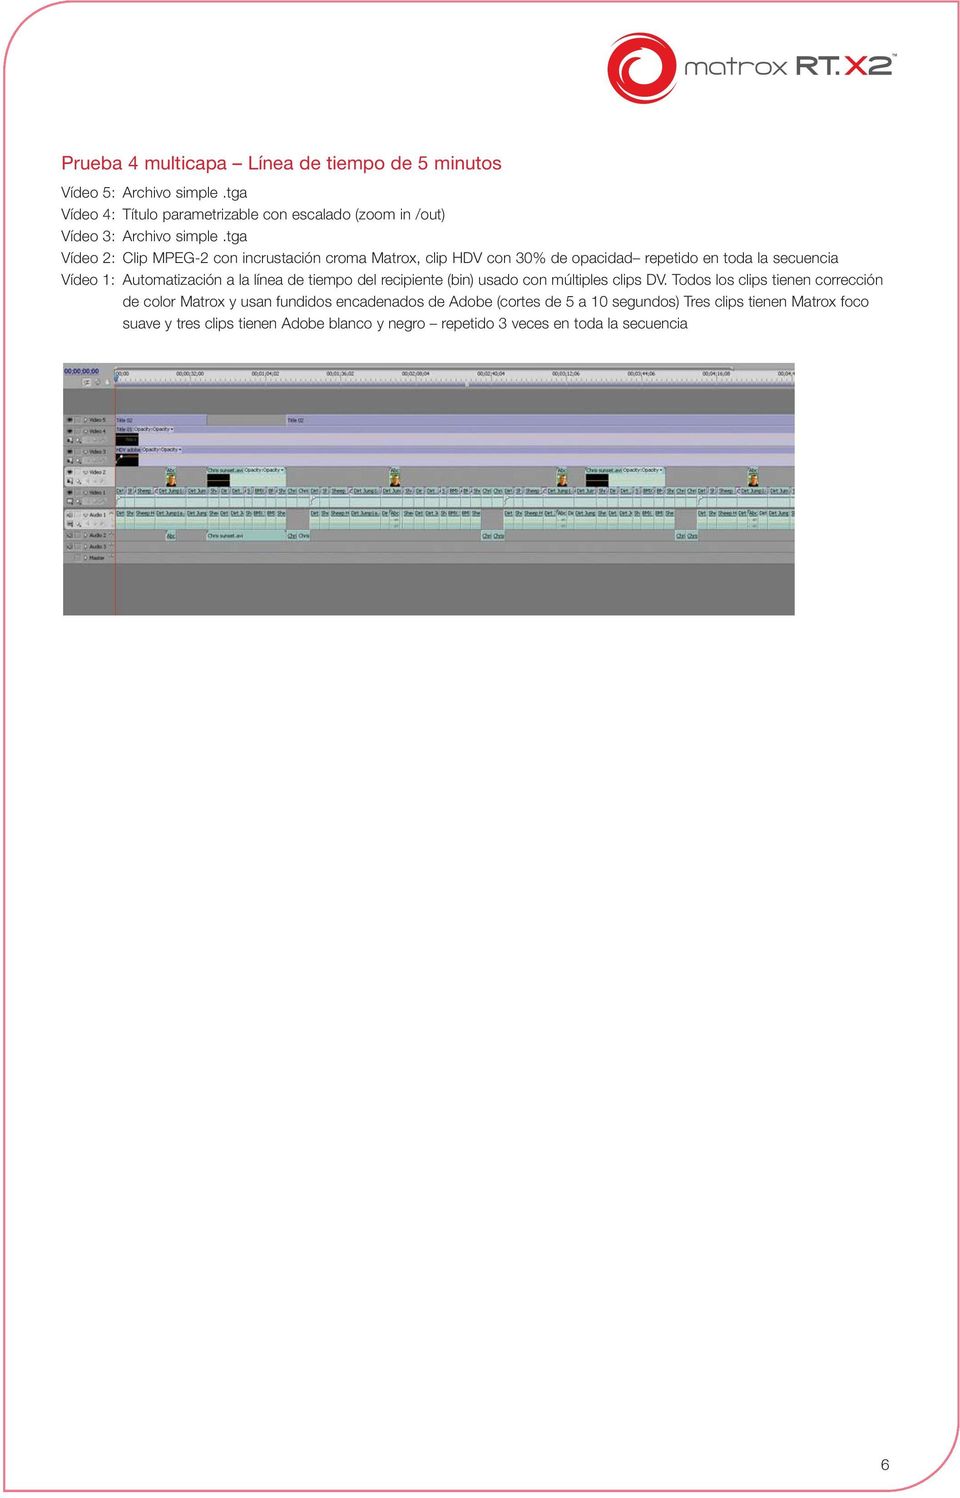 tga Vídeo 2: Clip MPEG-2 con incrustación croma Matrox, clip HDV con 30% de opacidad repetido en toda la secuencia Vídeo 1: Automatización a la línea